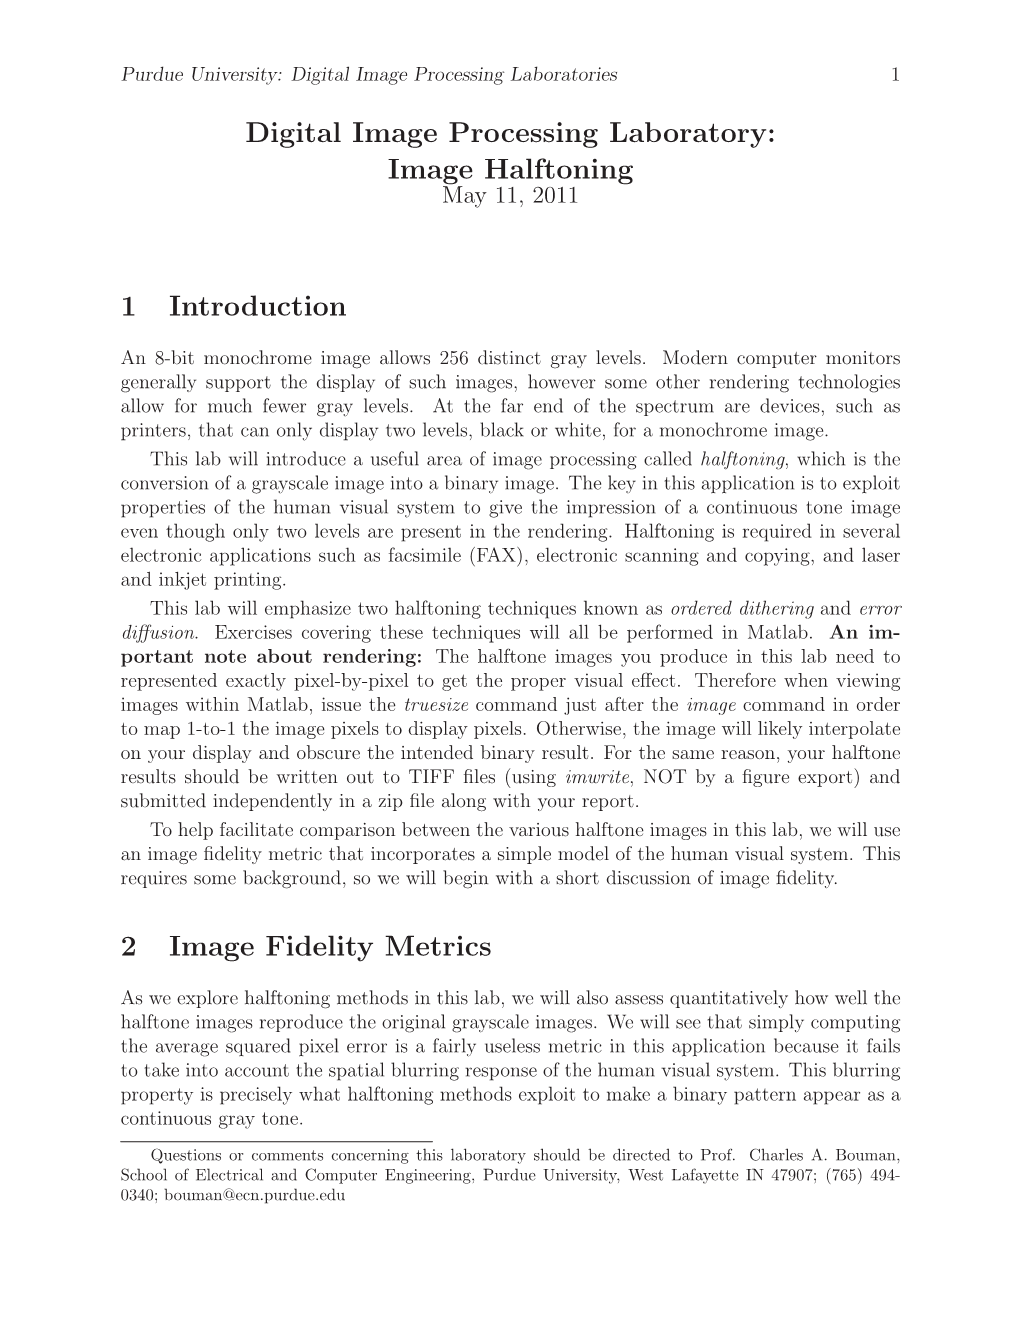 Image Halftoning 1 Introduction 2 Image